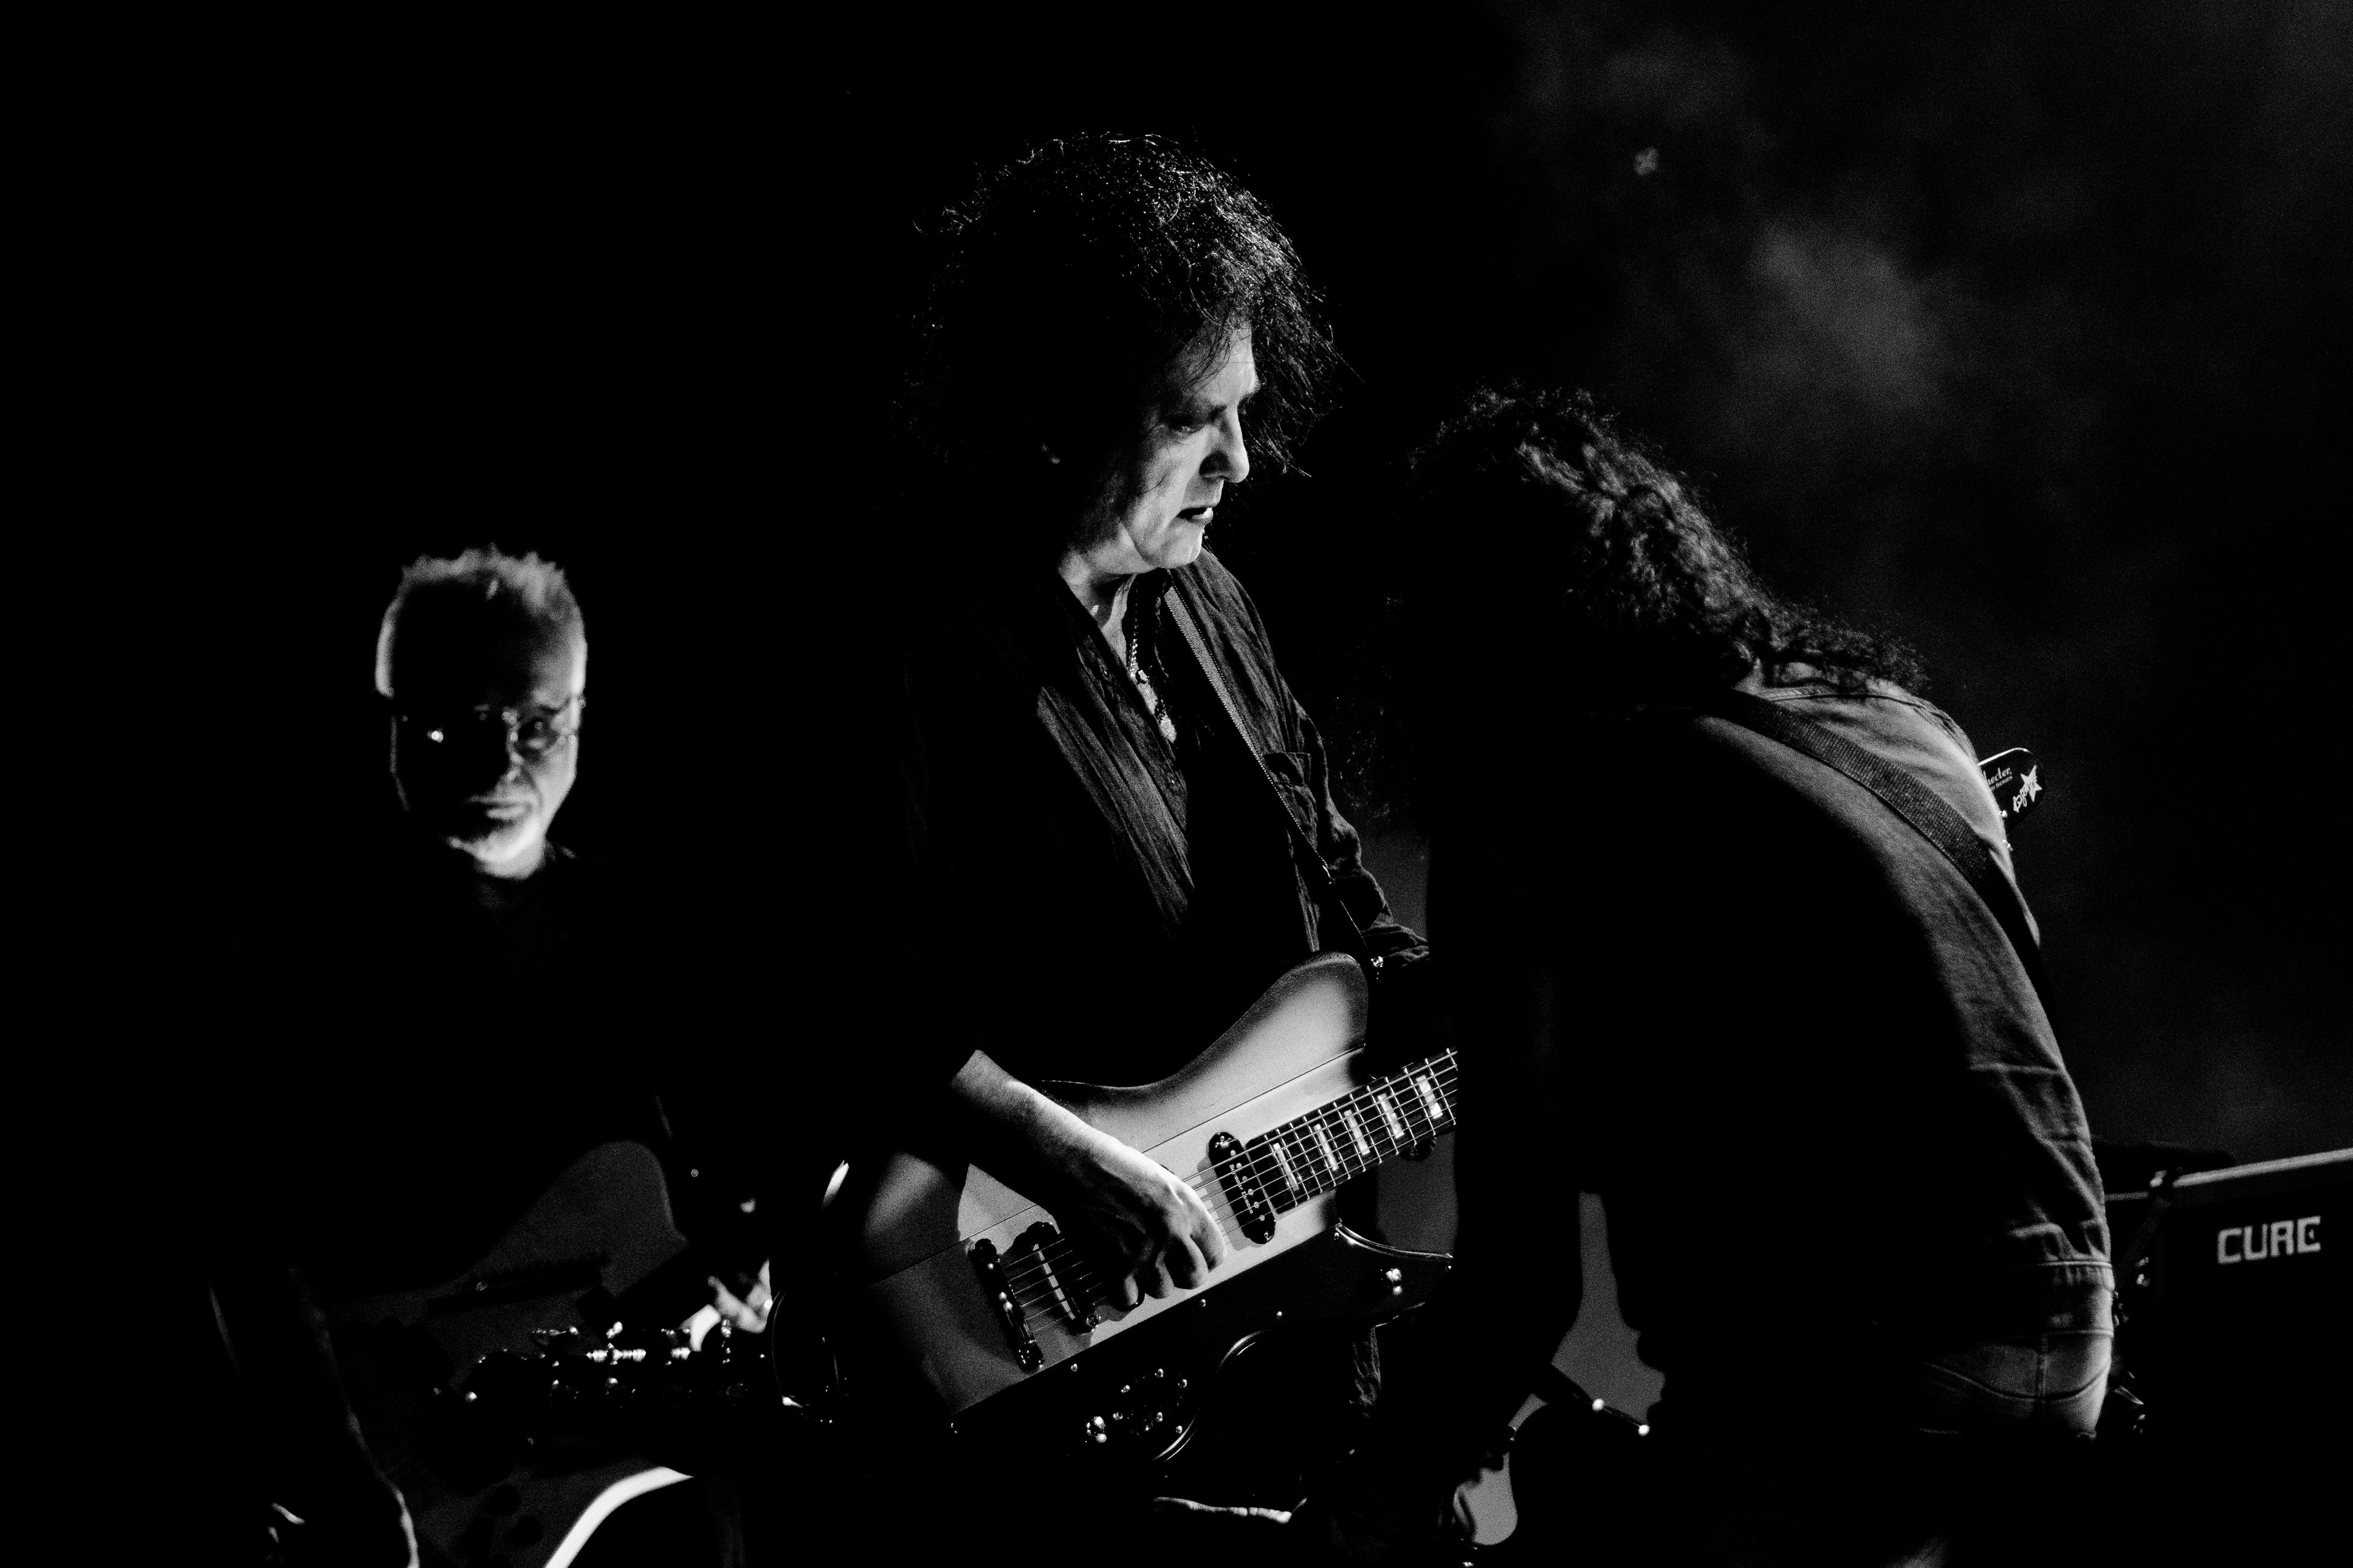 The Cure emmené par le chanteur Robert Smith au Paléo Festival de Nyon, le 25 juillet 2019. [Paléo Festival 2019 - Nicolas Patault]